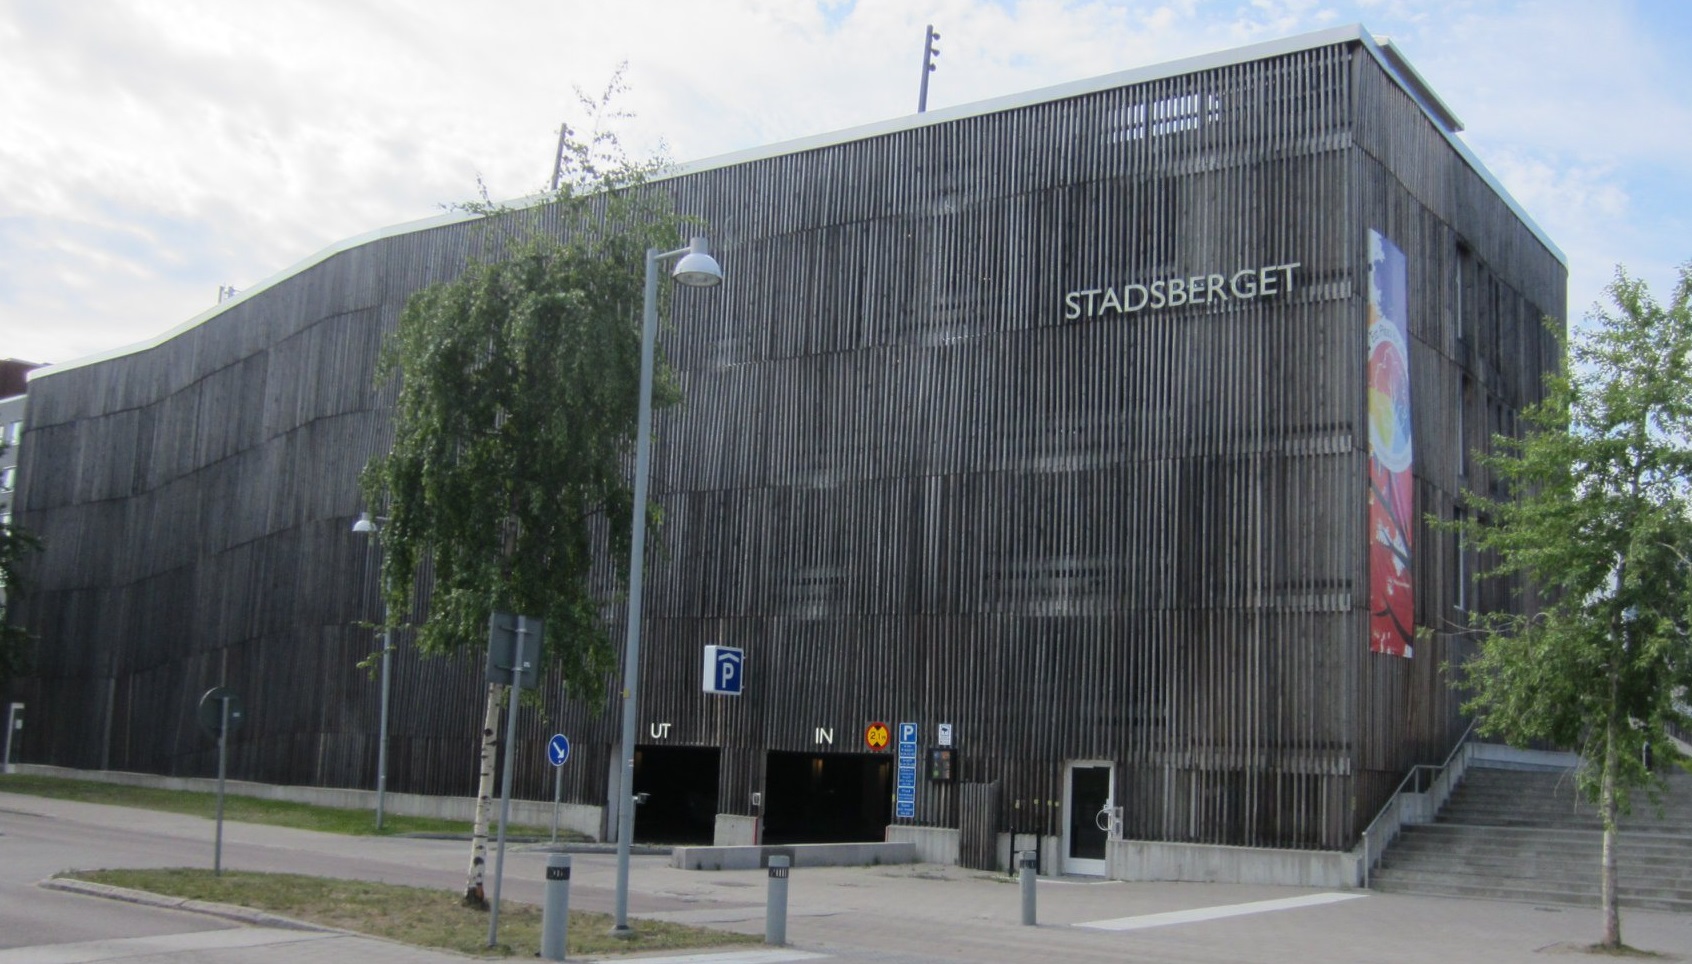 Är parkeringshuset Stadsberget i Piteå Sveriges fulaste byggnad genom tiderna?